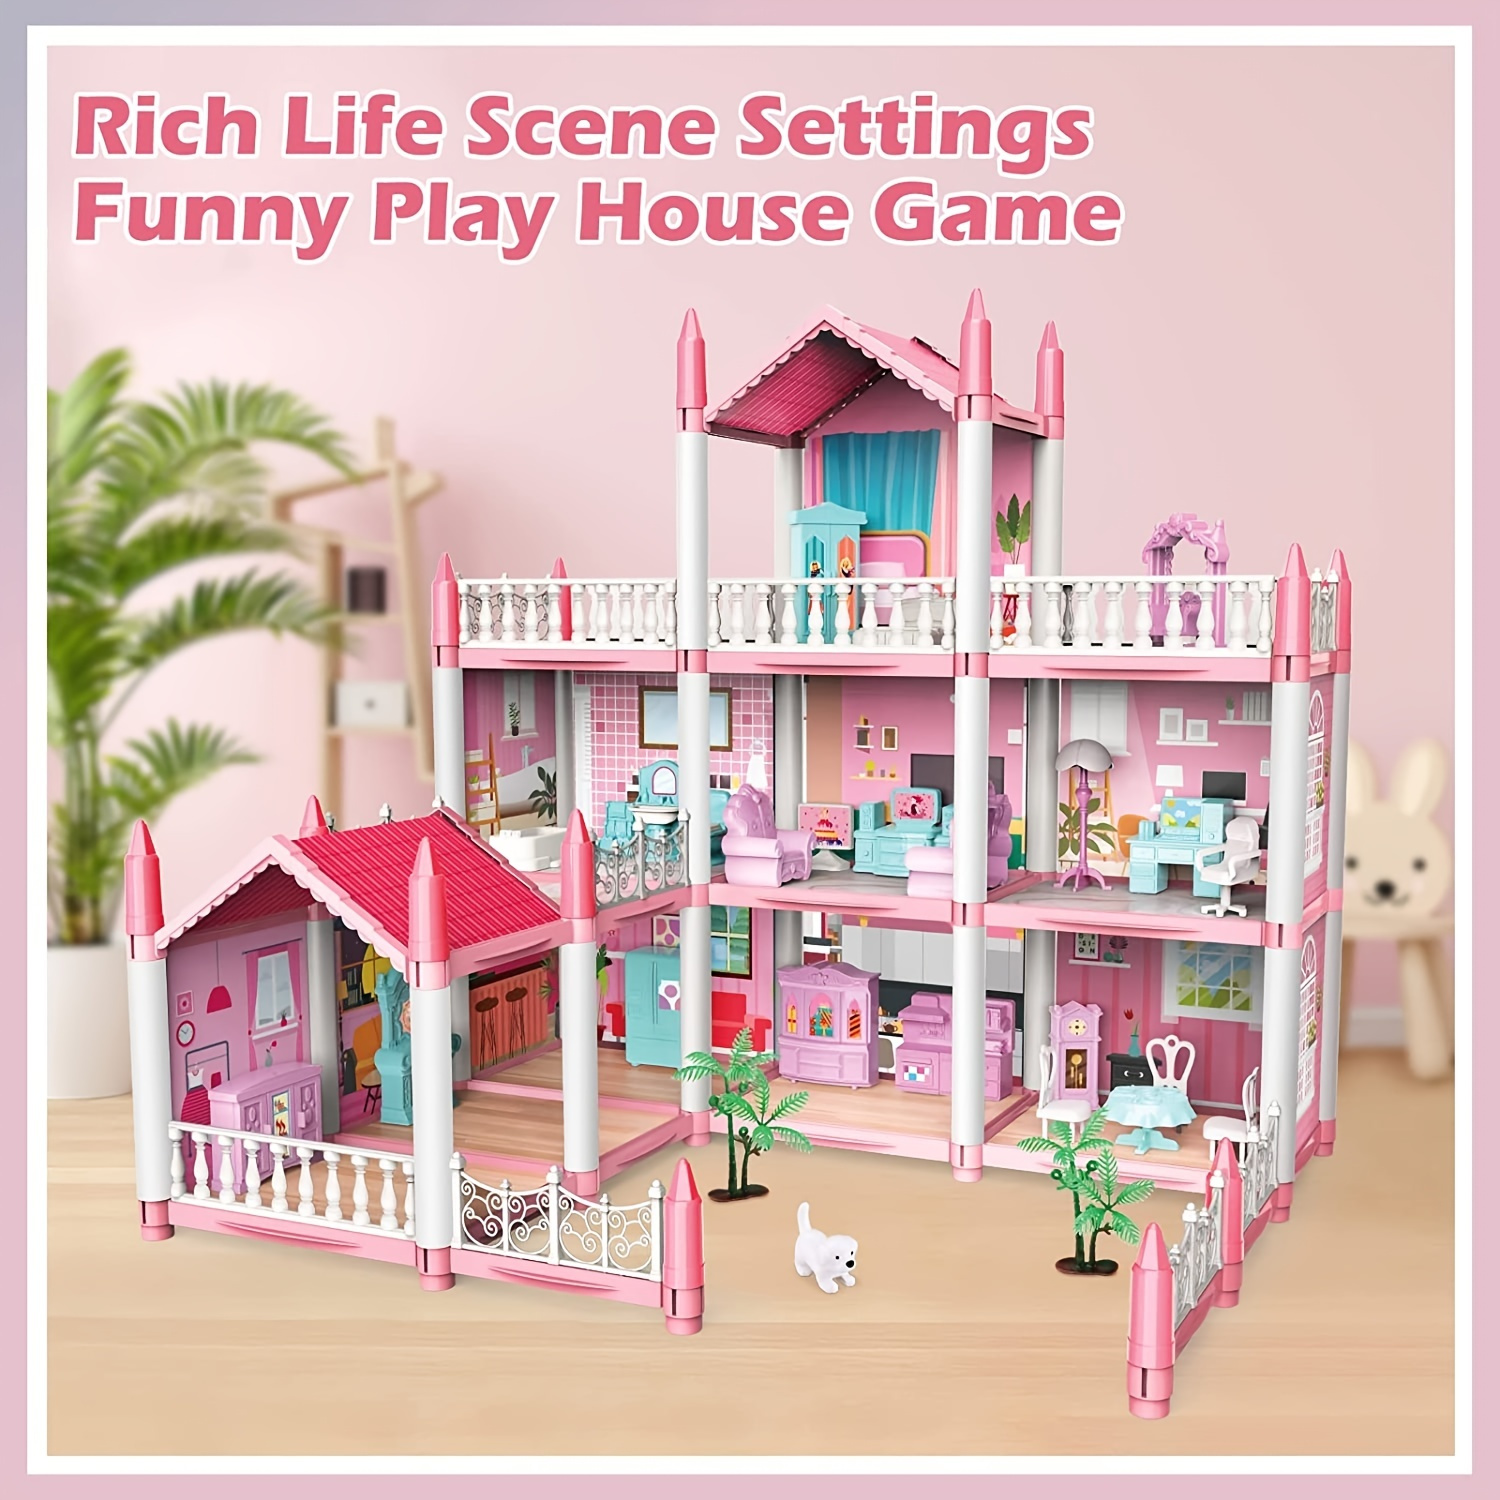  iLAND Accesorios para casa de muñecas en miniatura, incluye  puertas de casa de muñecas, ventanas de casa de muñecas, pomos de puerta de  casa de muñecas para casa de muñecas en